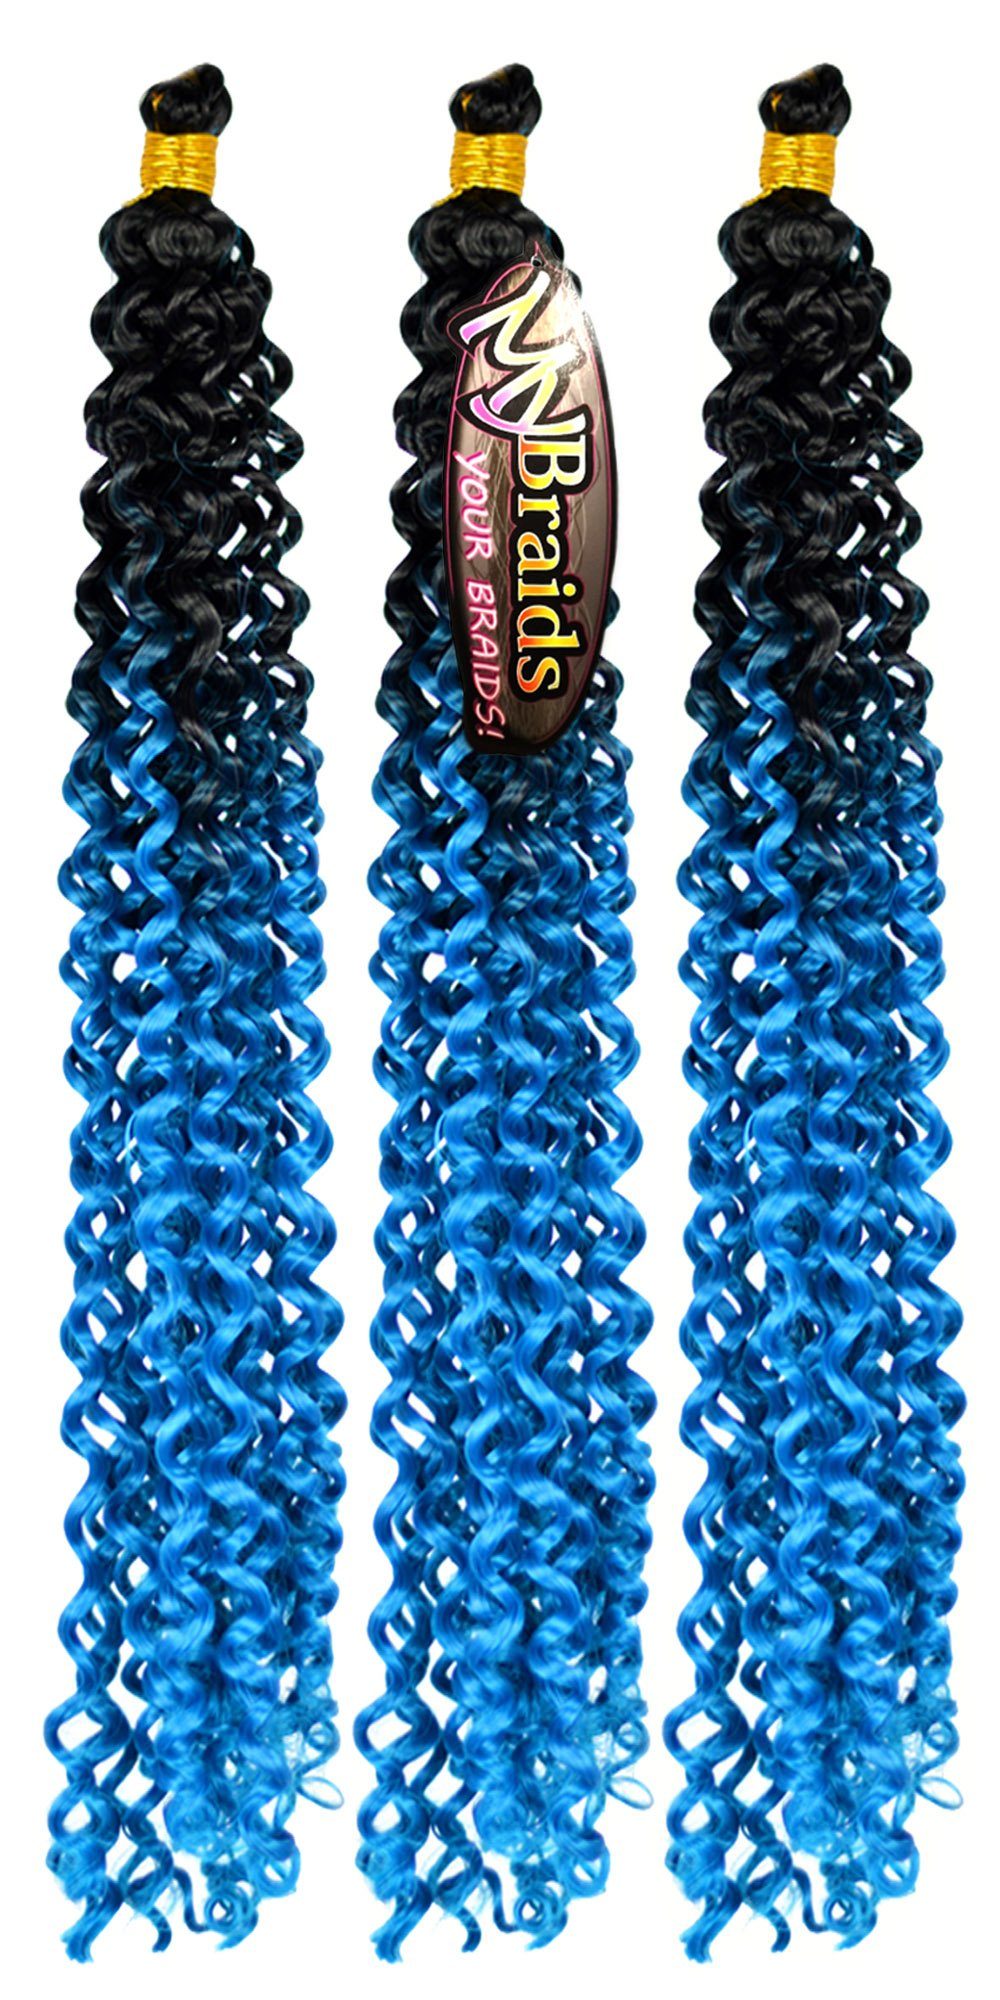 MyBraids YOUR BRAIDS! Kunsthaar-Extension Deep Wave Crochet Braids 3er Pack Flechthaar Ombre Zöpfe Wellig 24-WS Schwarz-Enzianblau